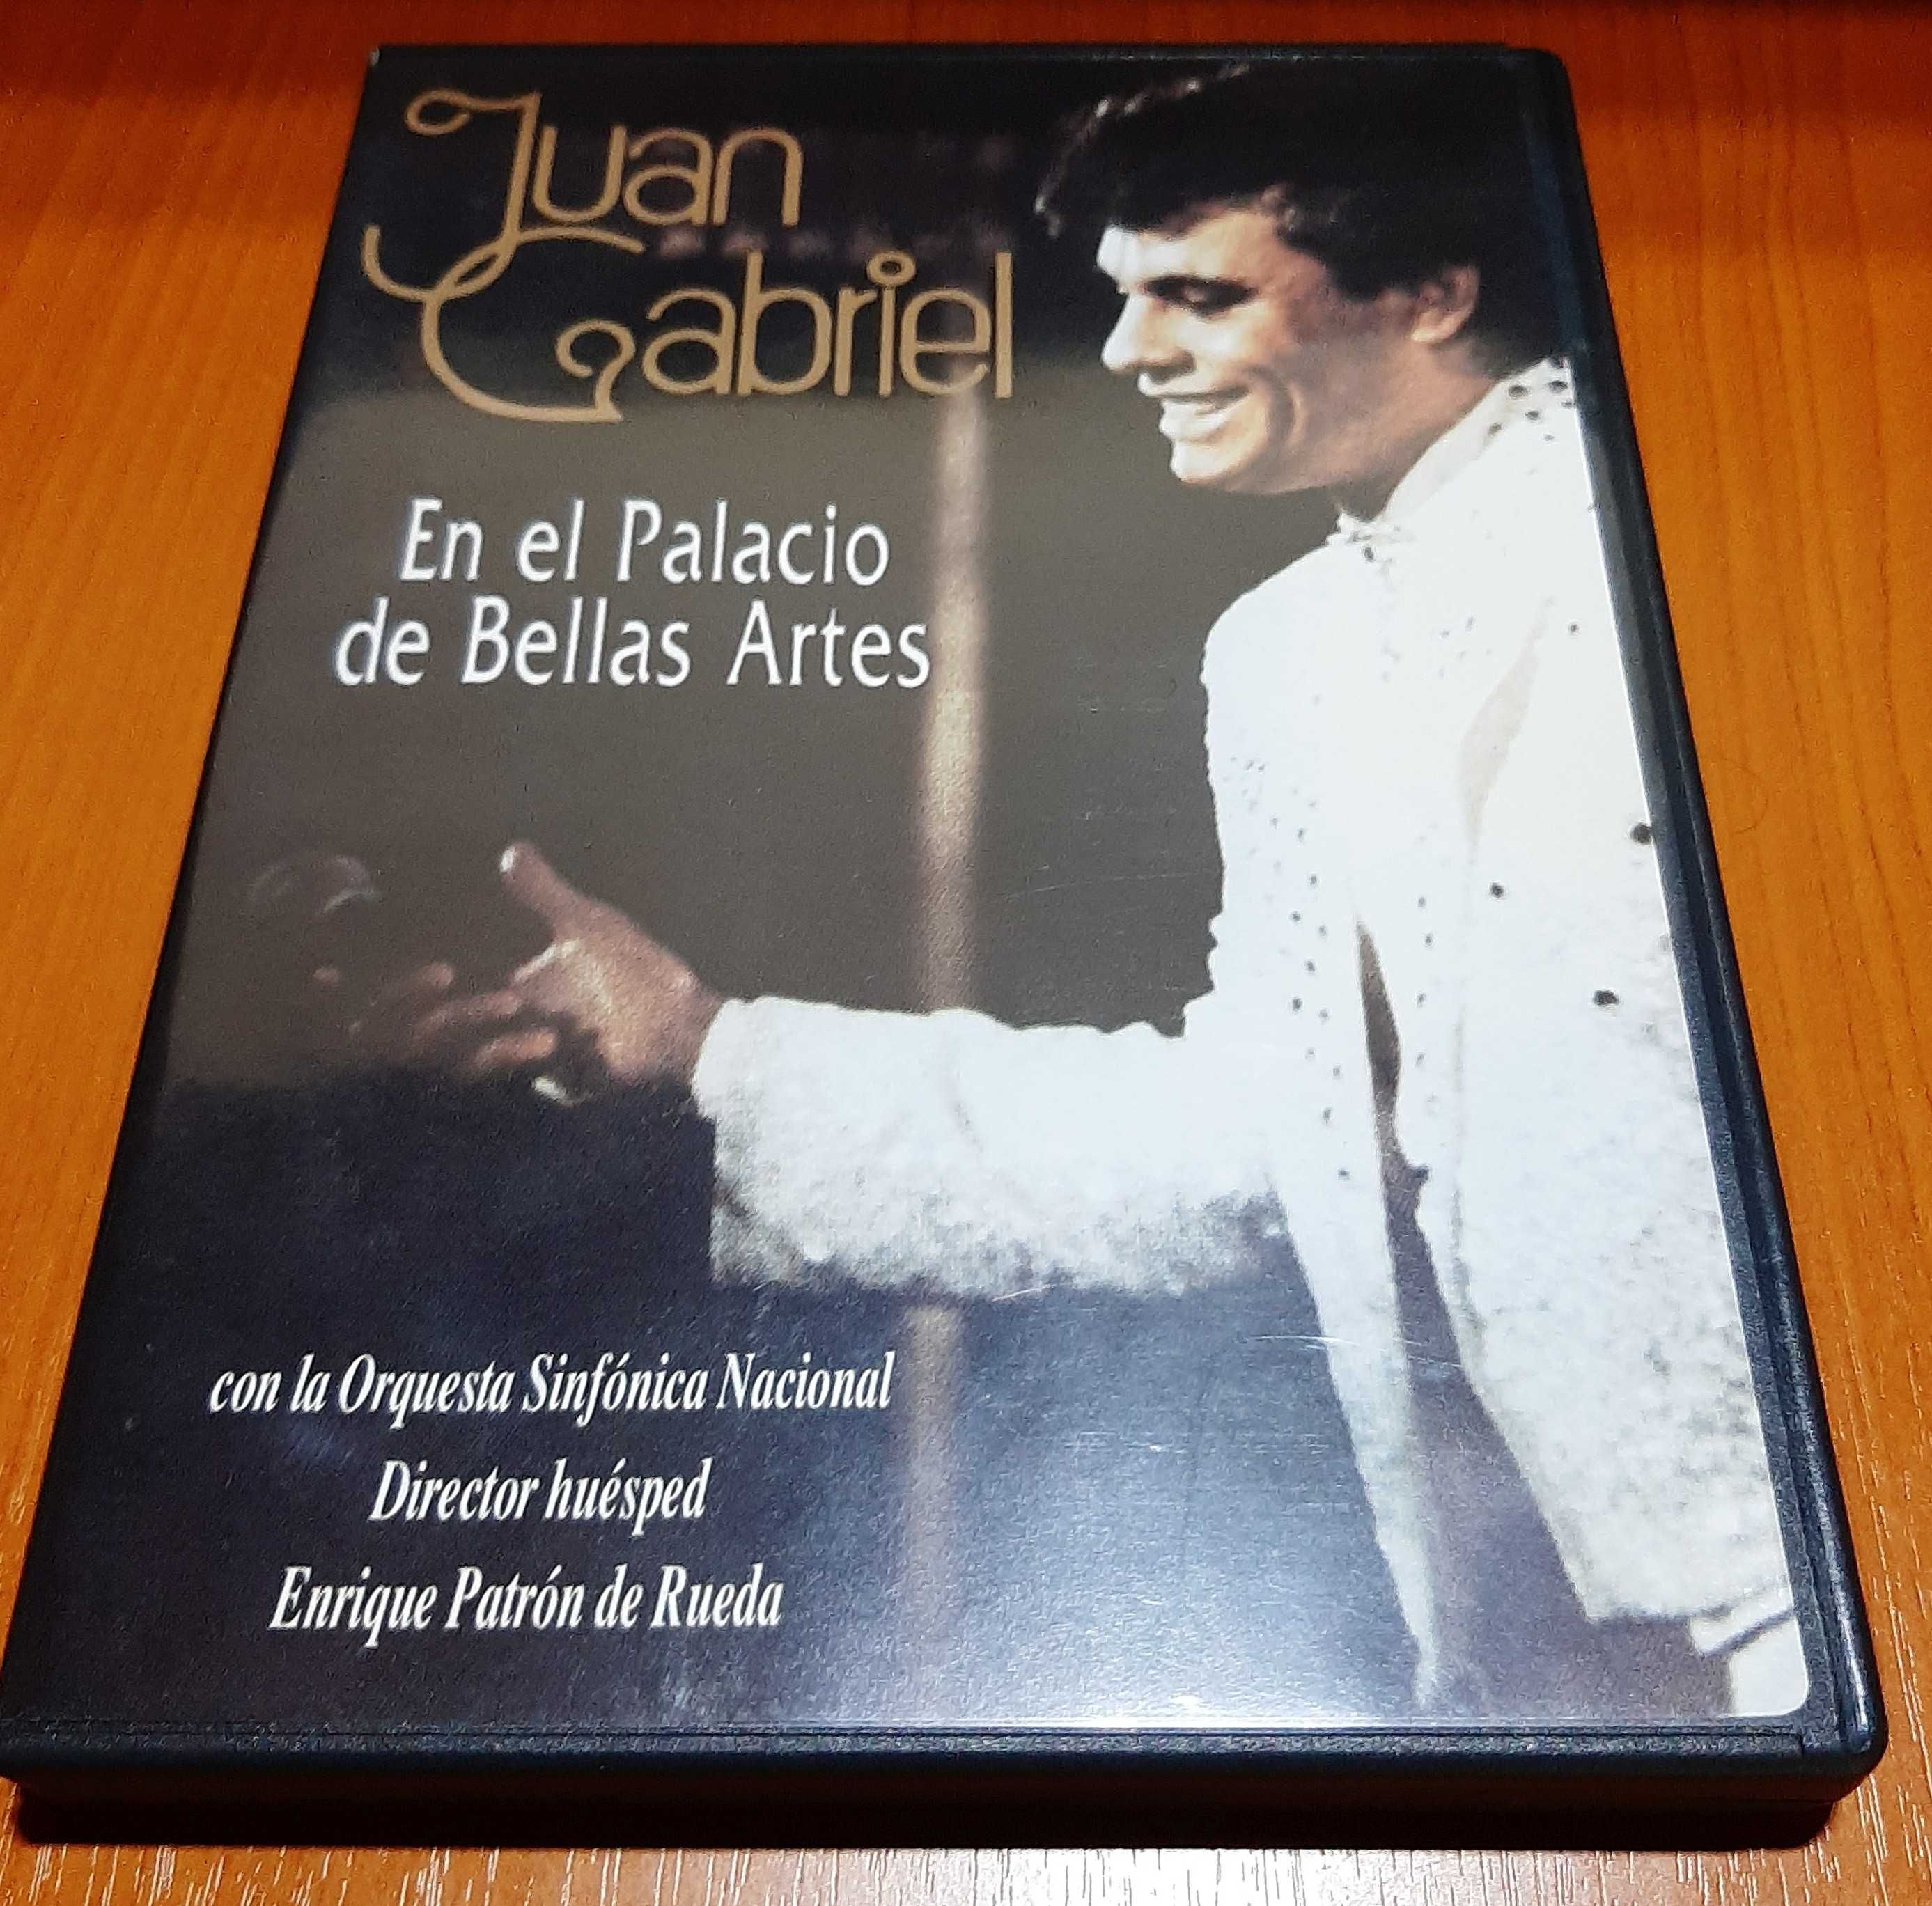 DVD original concerte, film Juan Gabriel